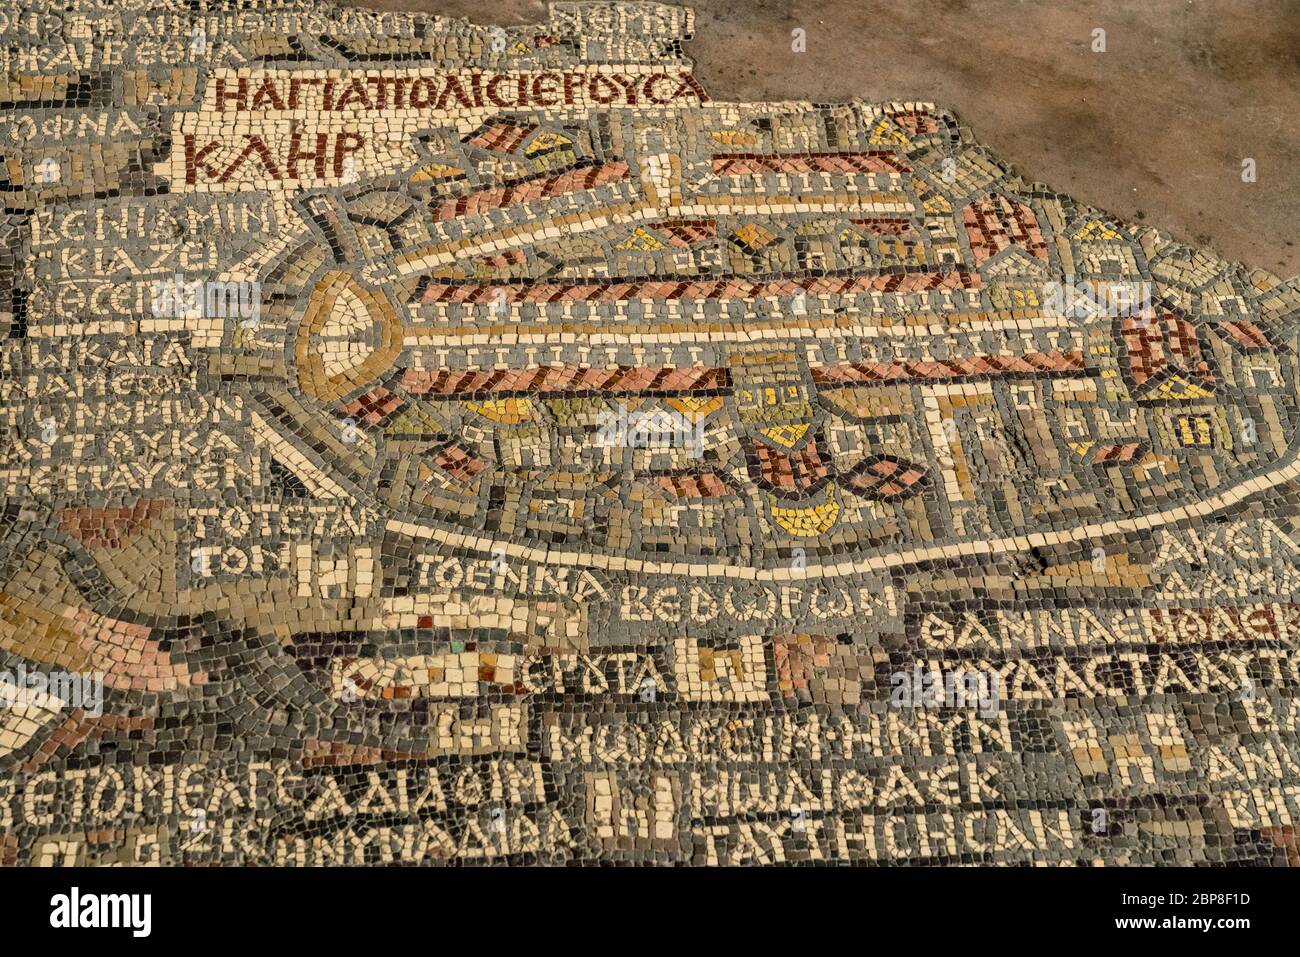 Giordania, Madaba, la famosa mappa a mosaico della Palestina, chiamata la  mappa di Madaba, sul pavimento della Chiesa di San Giorgio. Originariamente  era il pavimento di una chiesa bizantina, fu costruita nel